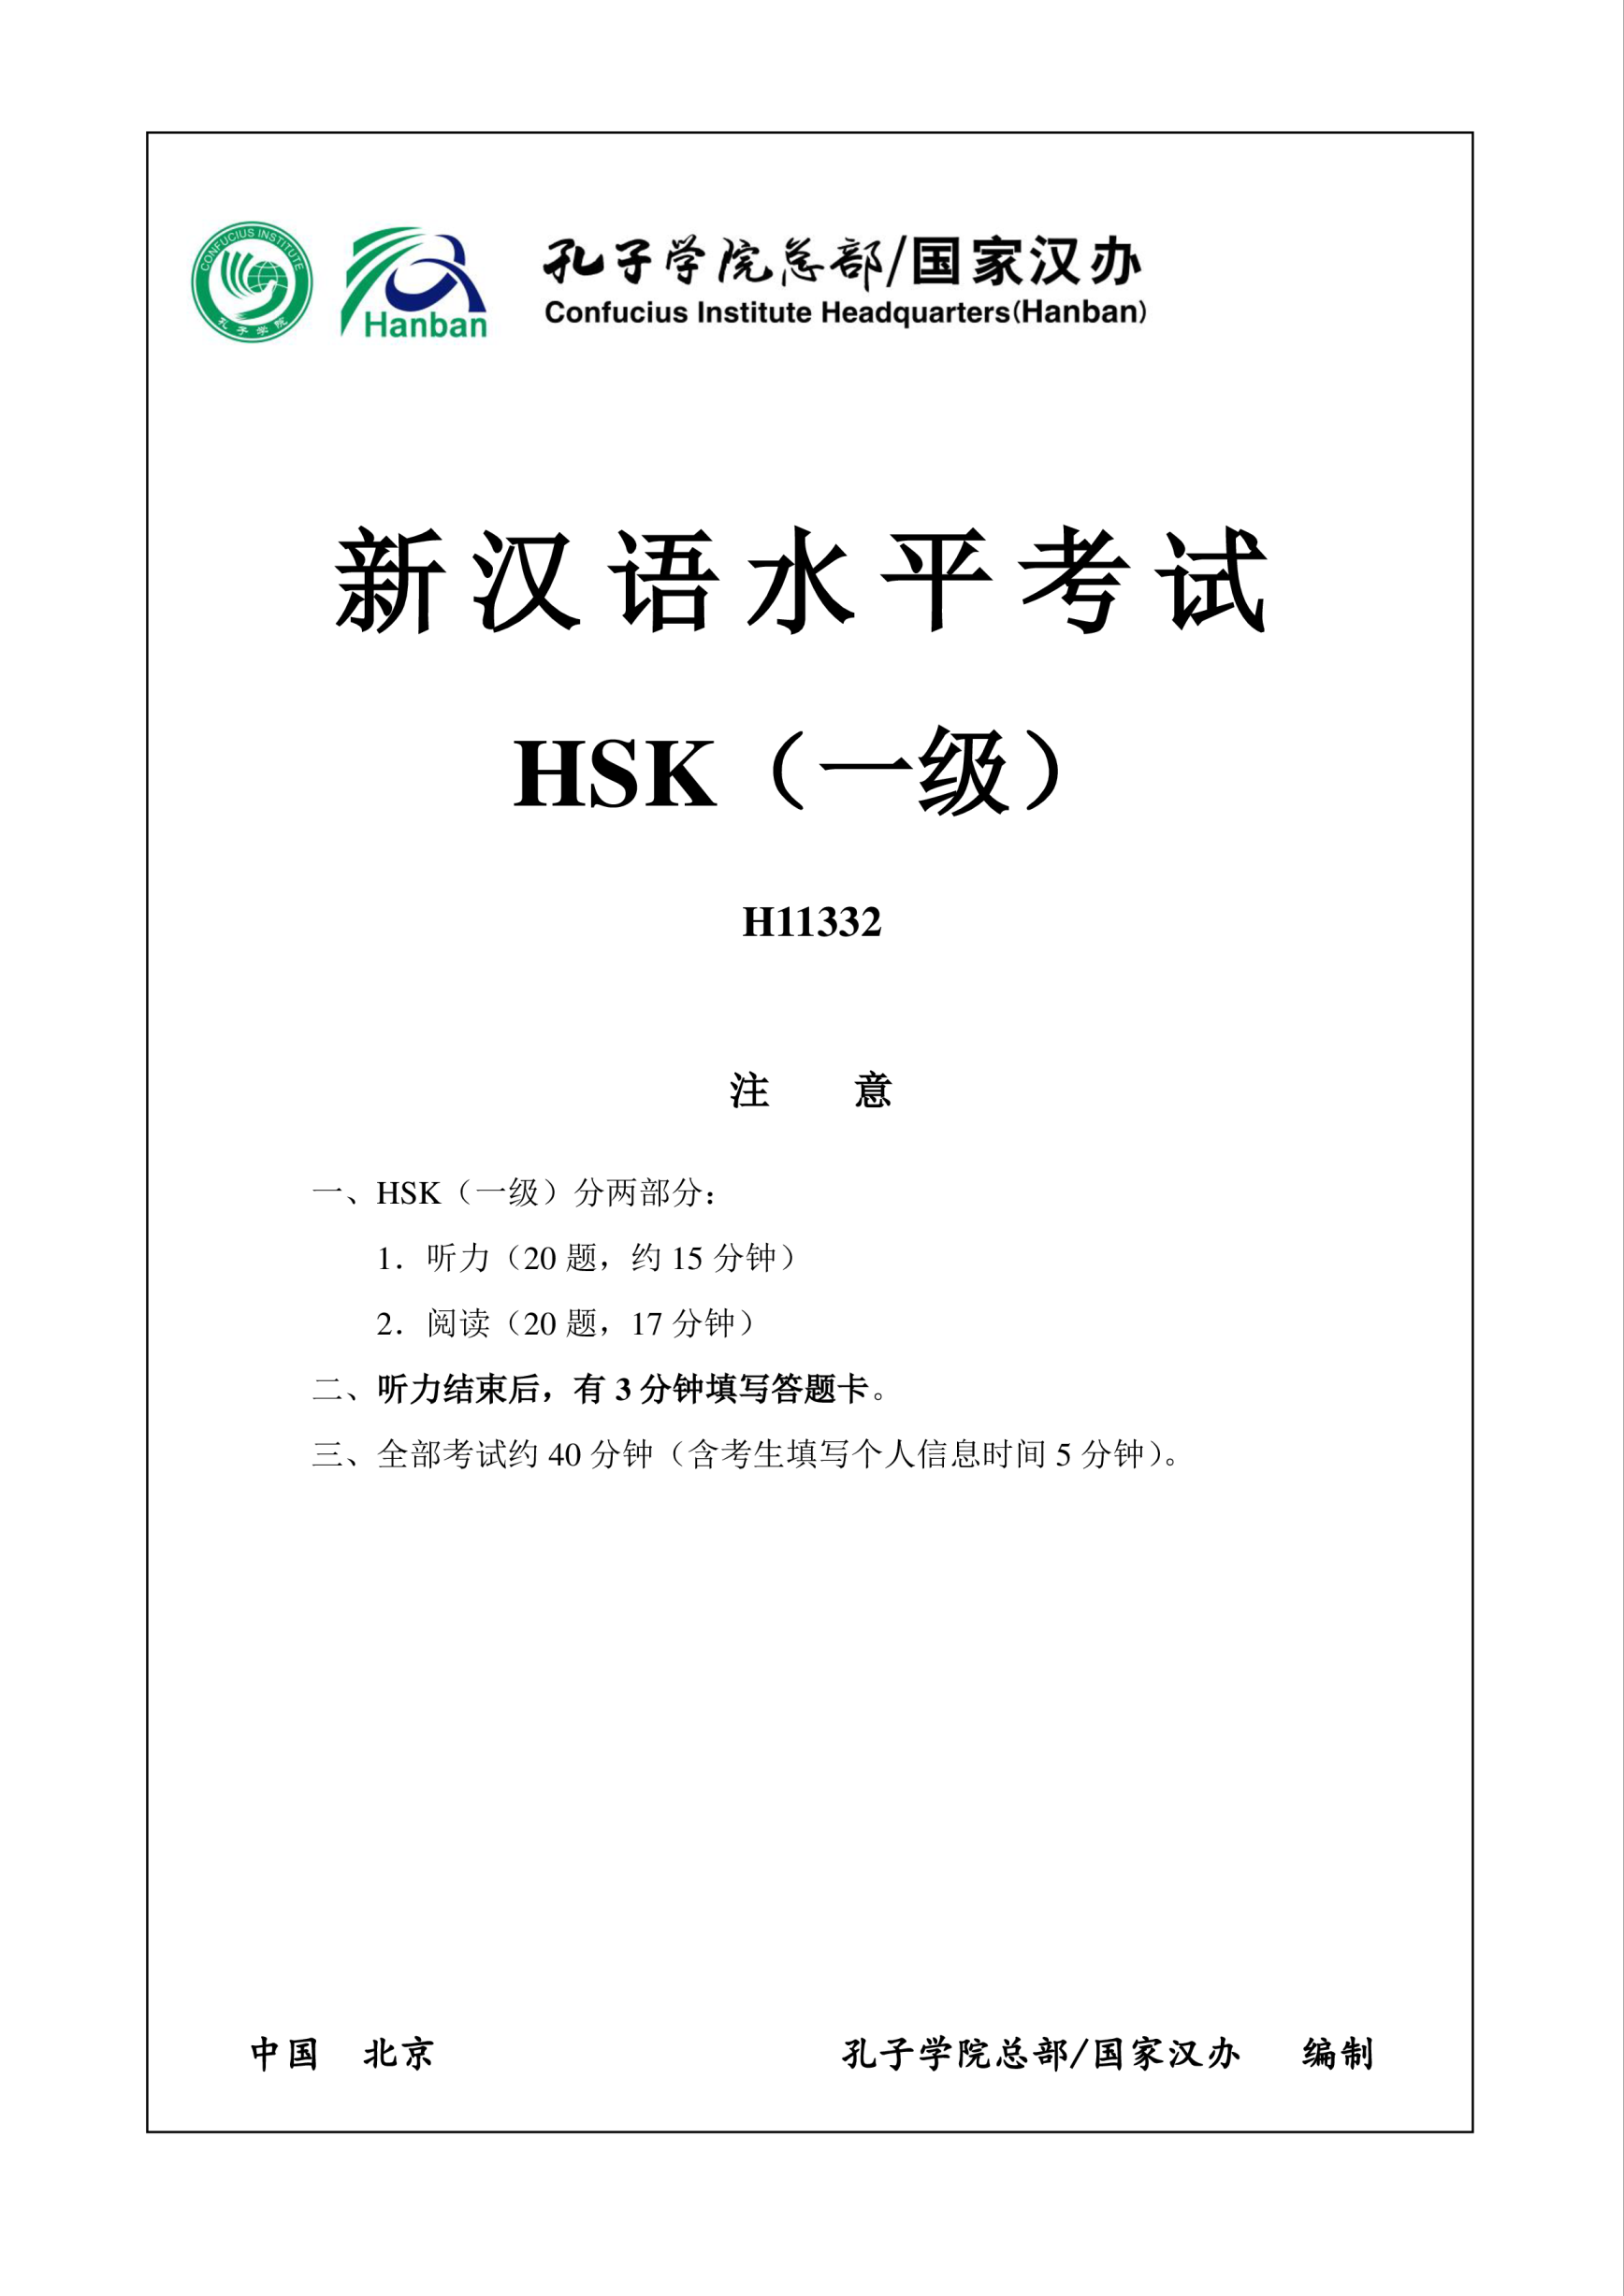 Vorschaubild der VorlageH11332 HSK1 Chinese Exam including Answers